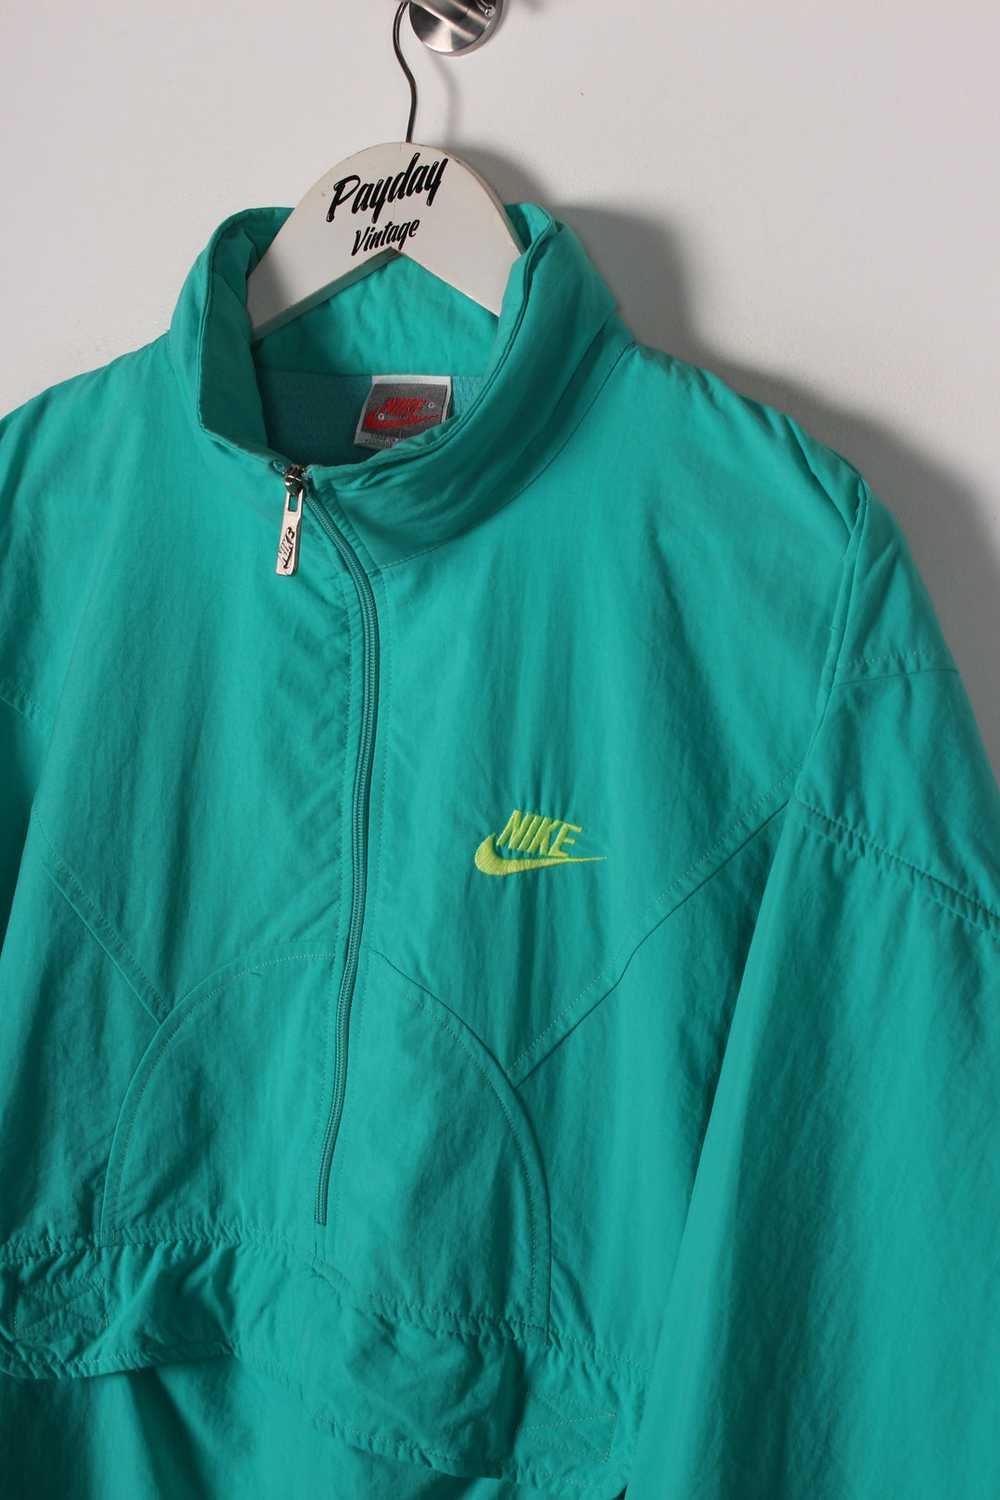 80's Nike Track Jacket Large - image 2